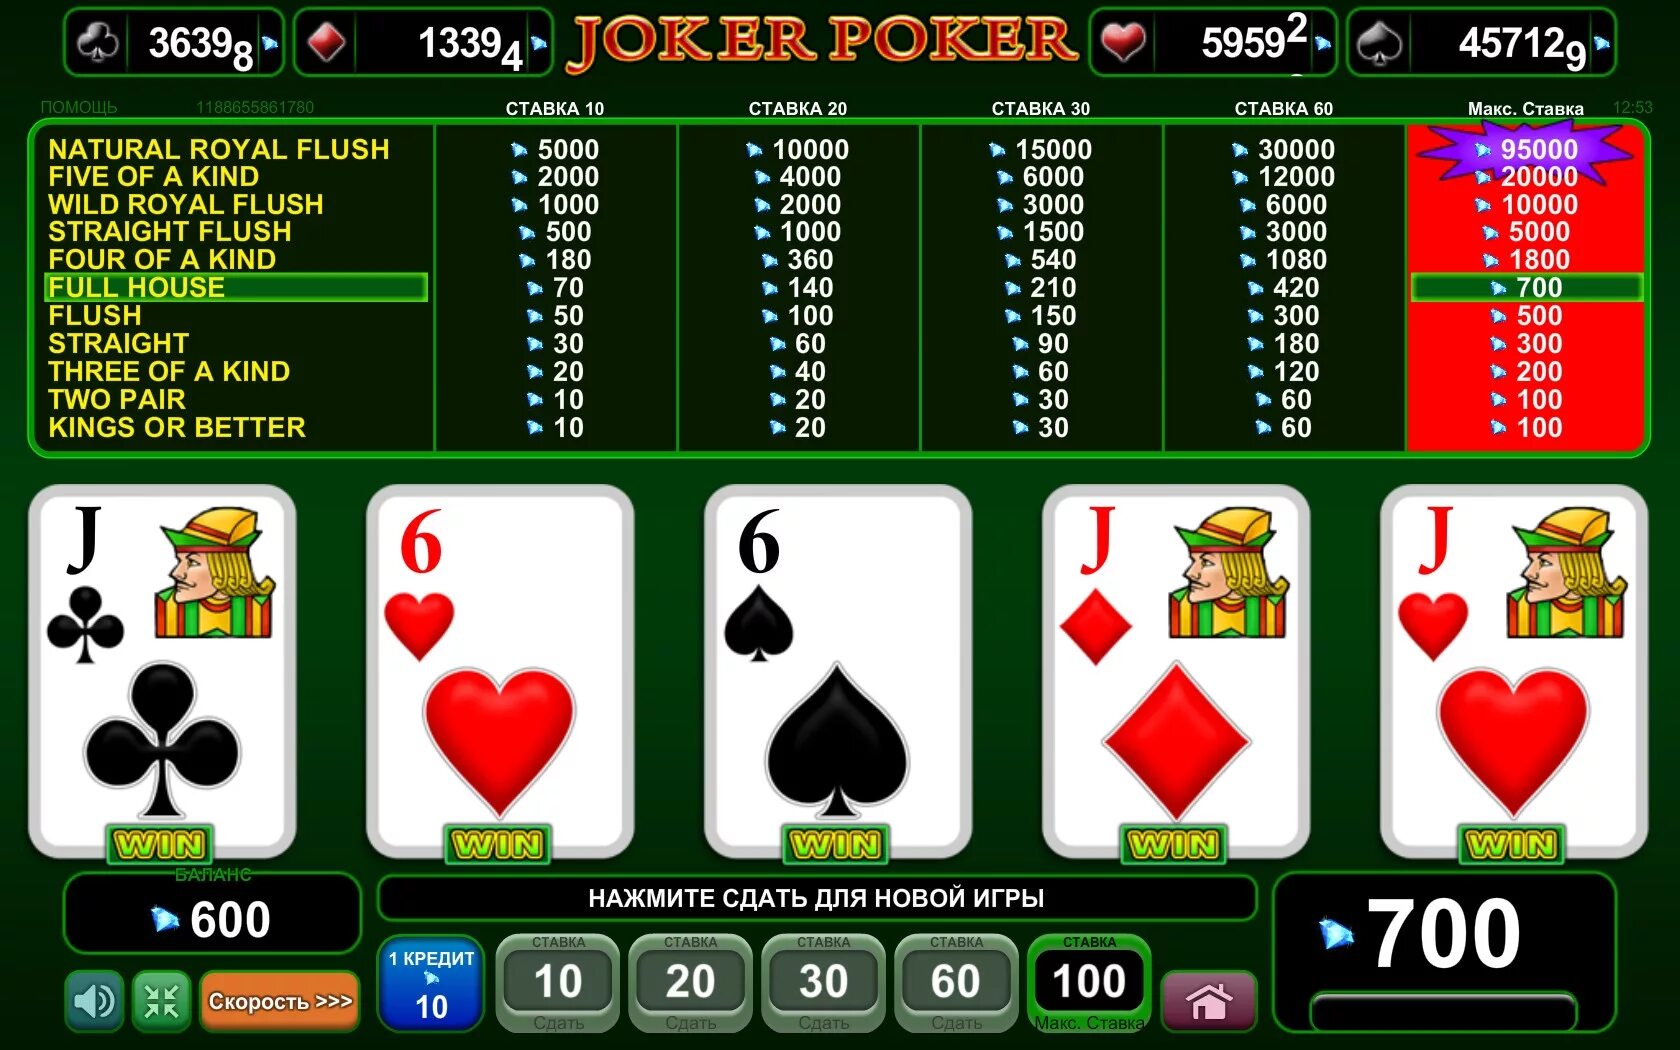 Animash комбинации. Комбинации в покере с Джокером. Карточные игровые автоматы Покер. Покер комбинации карт с Джокером. Комбинация Покер в покере с Джокером.